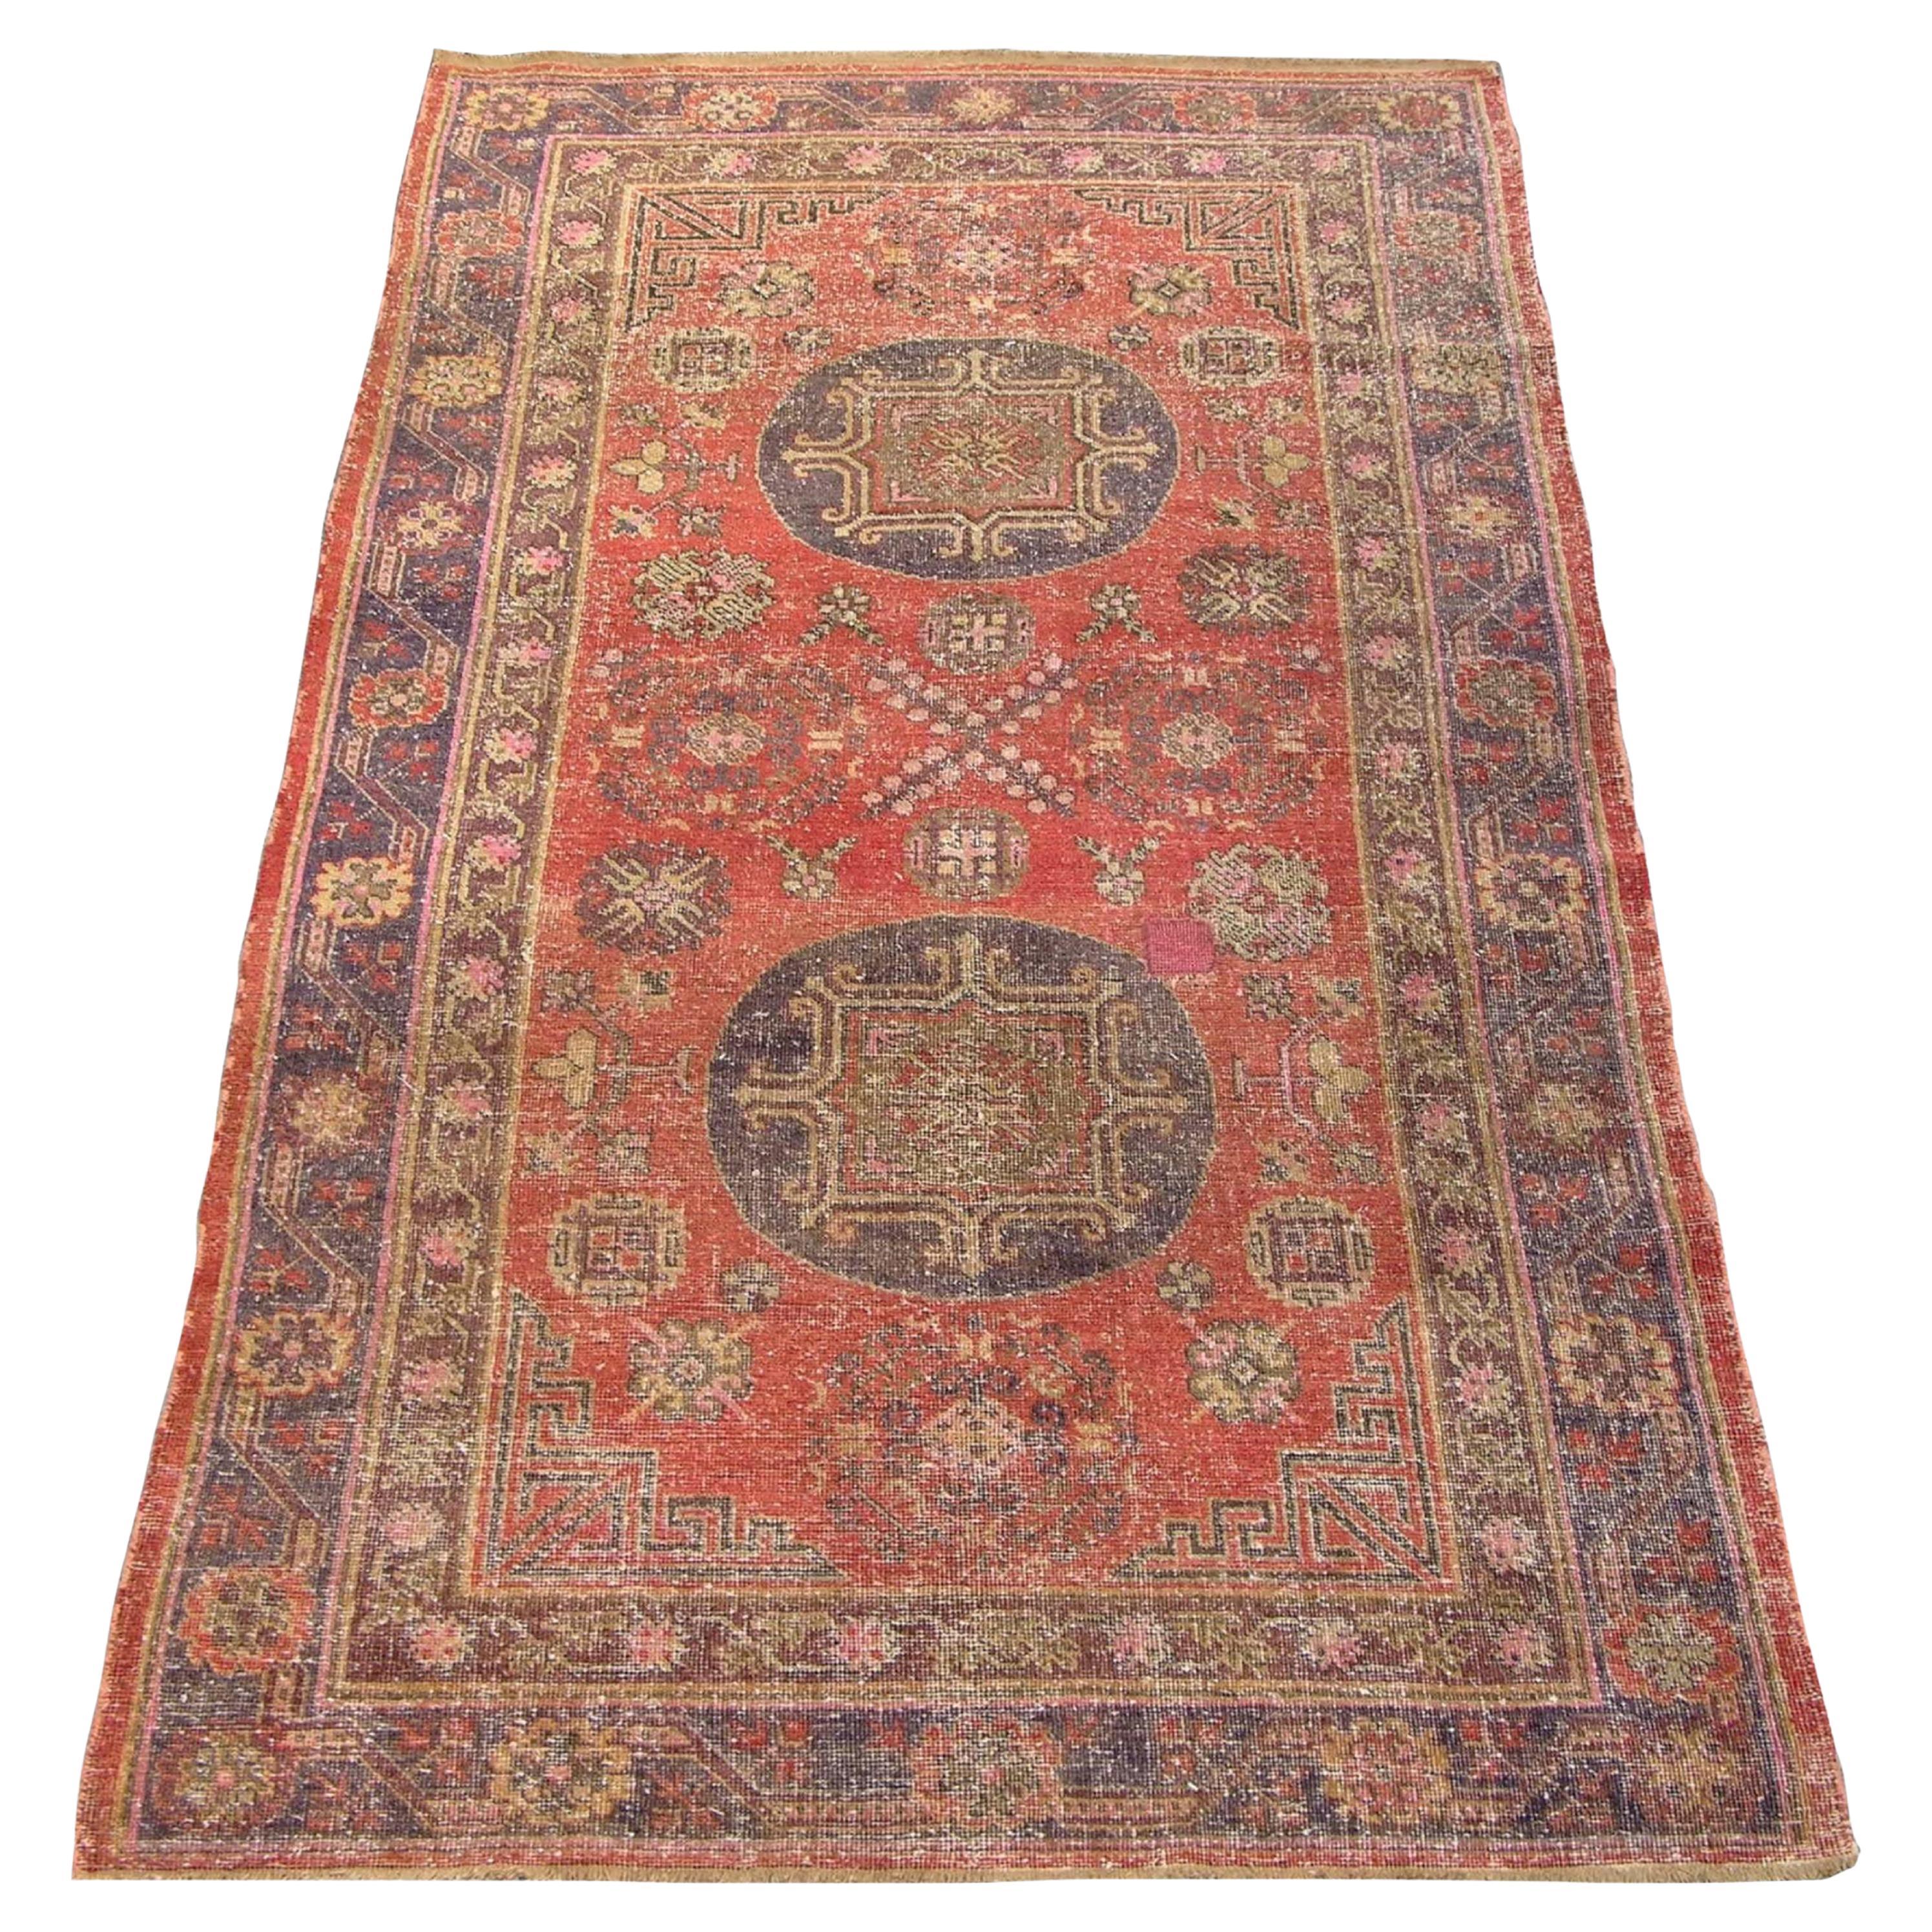 Authentischer Khotan-Samarkand-Teppich aus dem späten 19.